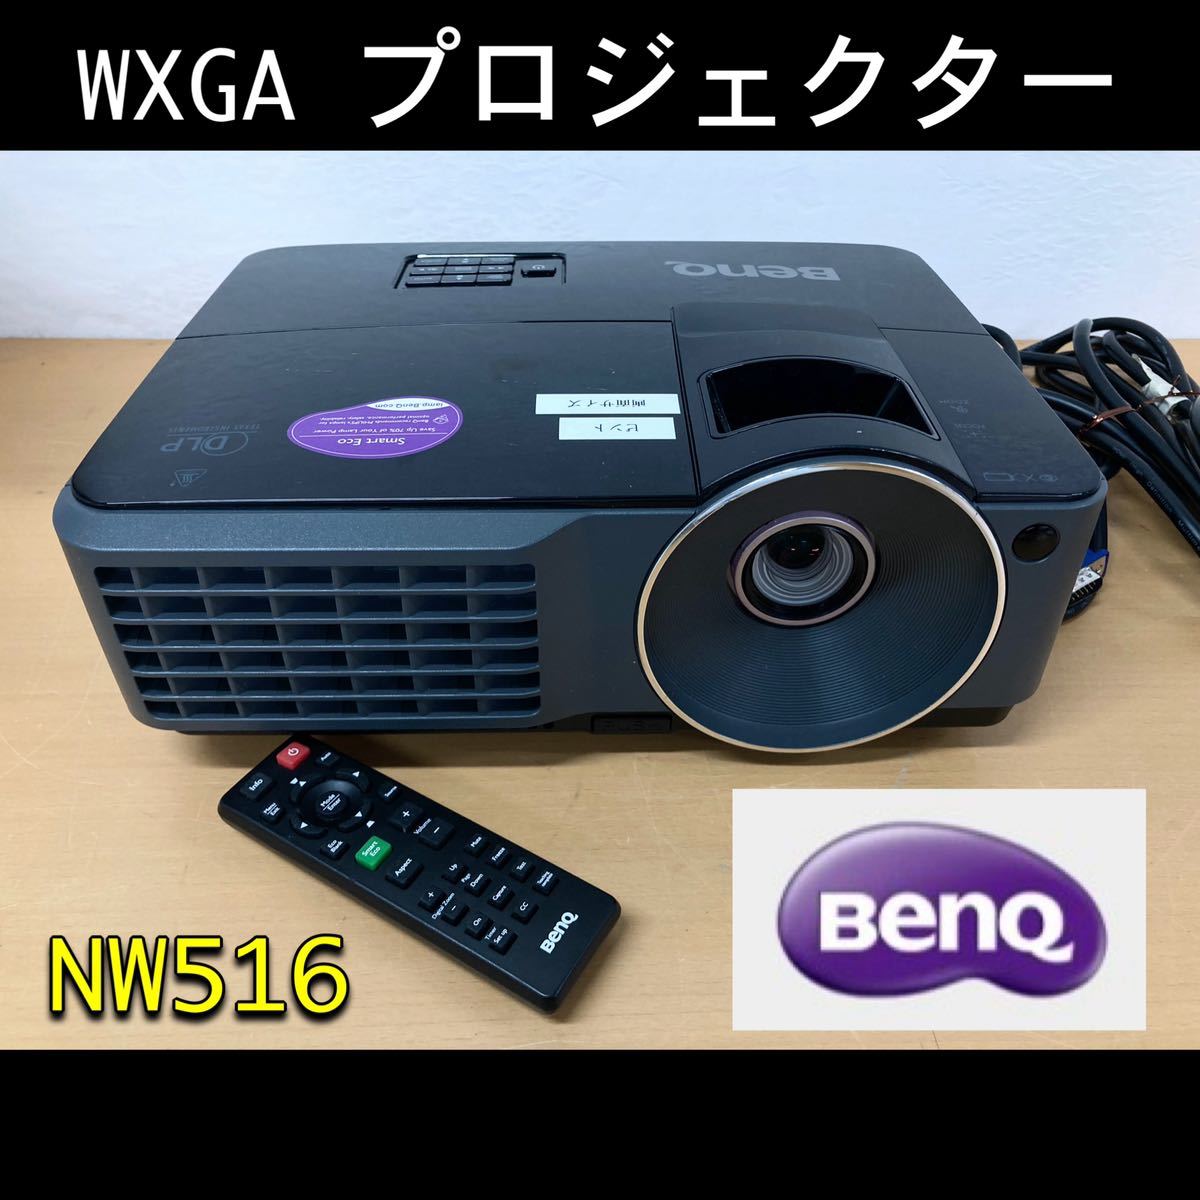 堀②) ◎動作確認済み BenQ WXGA プロジェクター MW516 2800lm 3D映像 DLP リモコン付 ベンキュー データプロジェクター (231129 1-3)